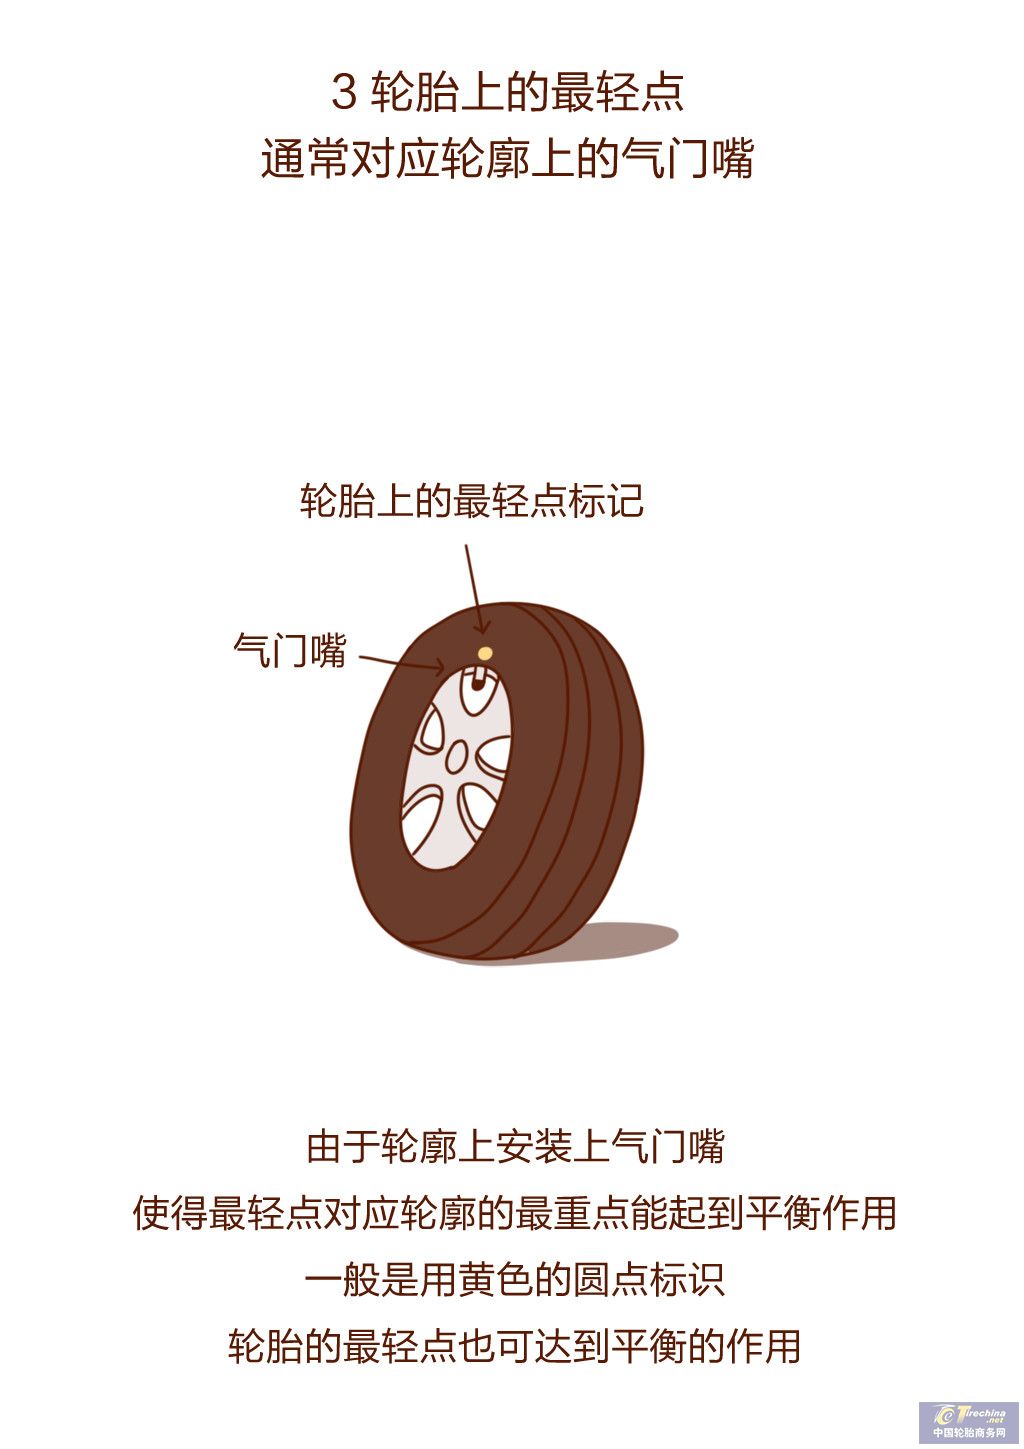 安装轮胎时，要注意4个要点，估计很多新手不知道